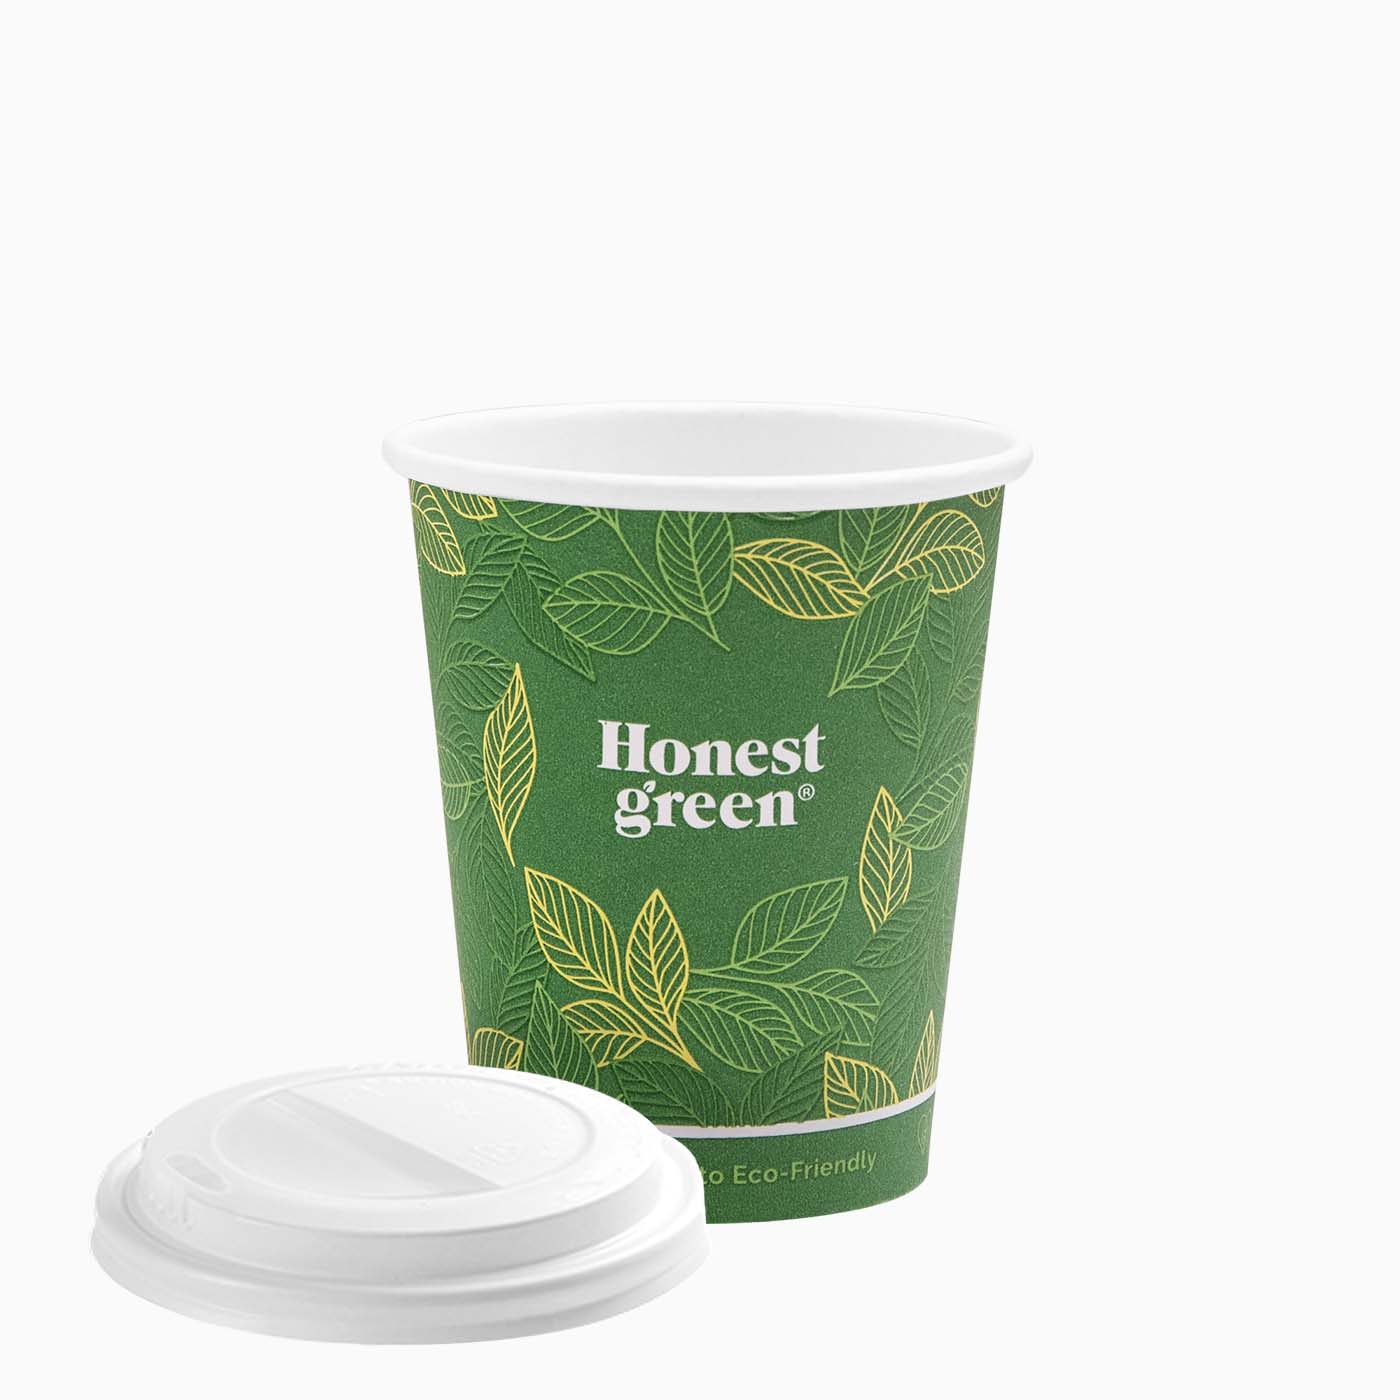 Öko -Grün -Pappglas mit mittlerer Getränkeabdeckung